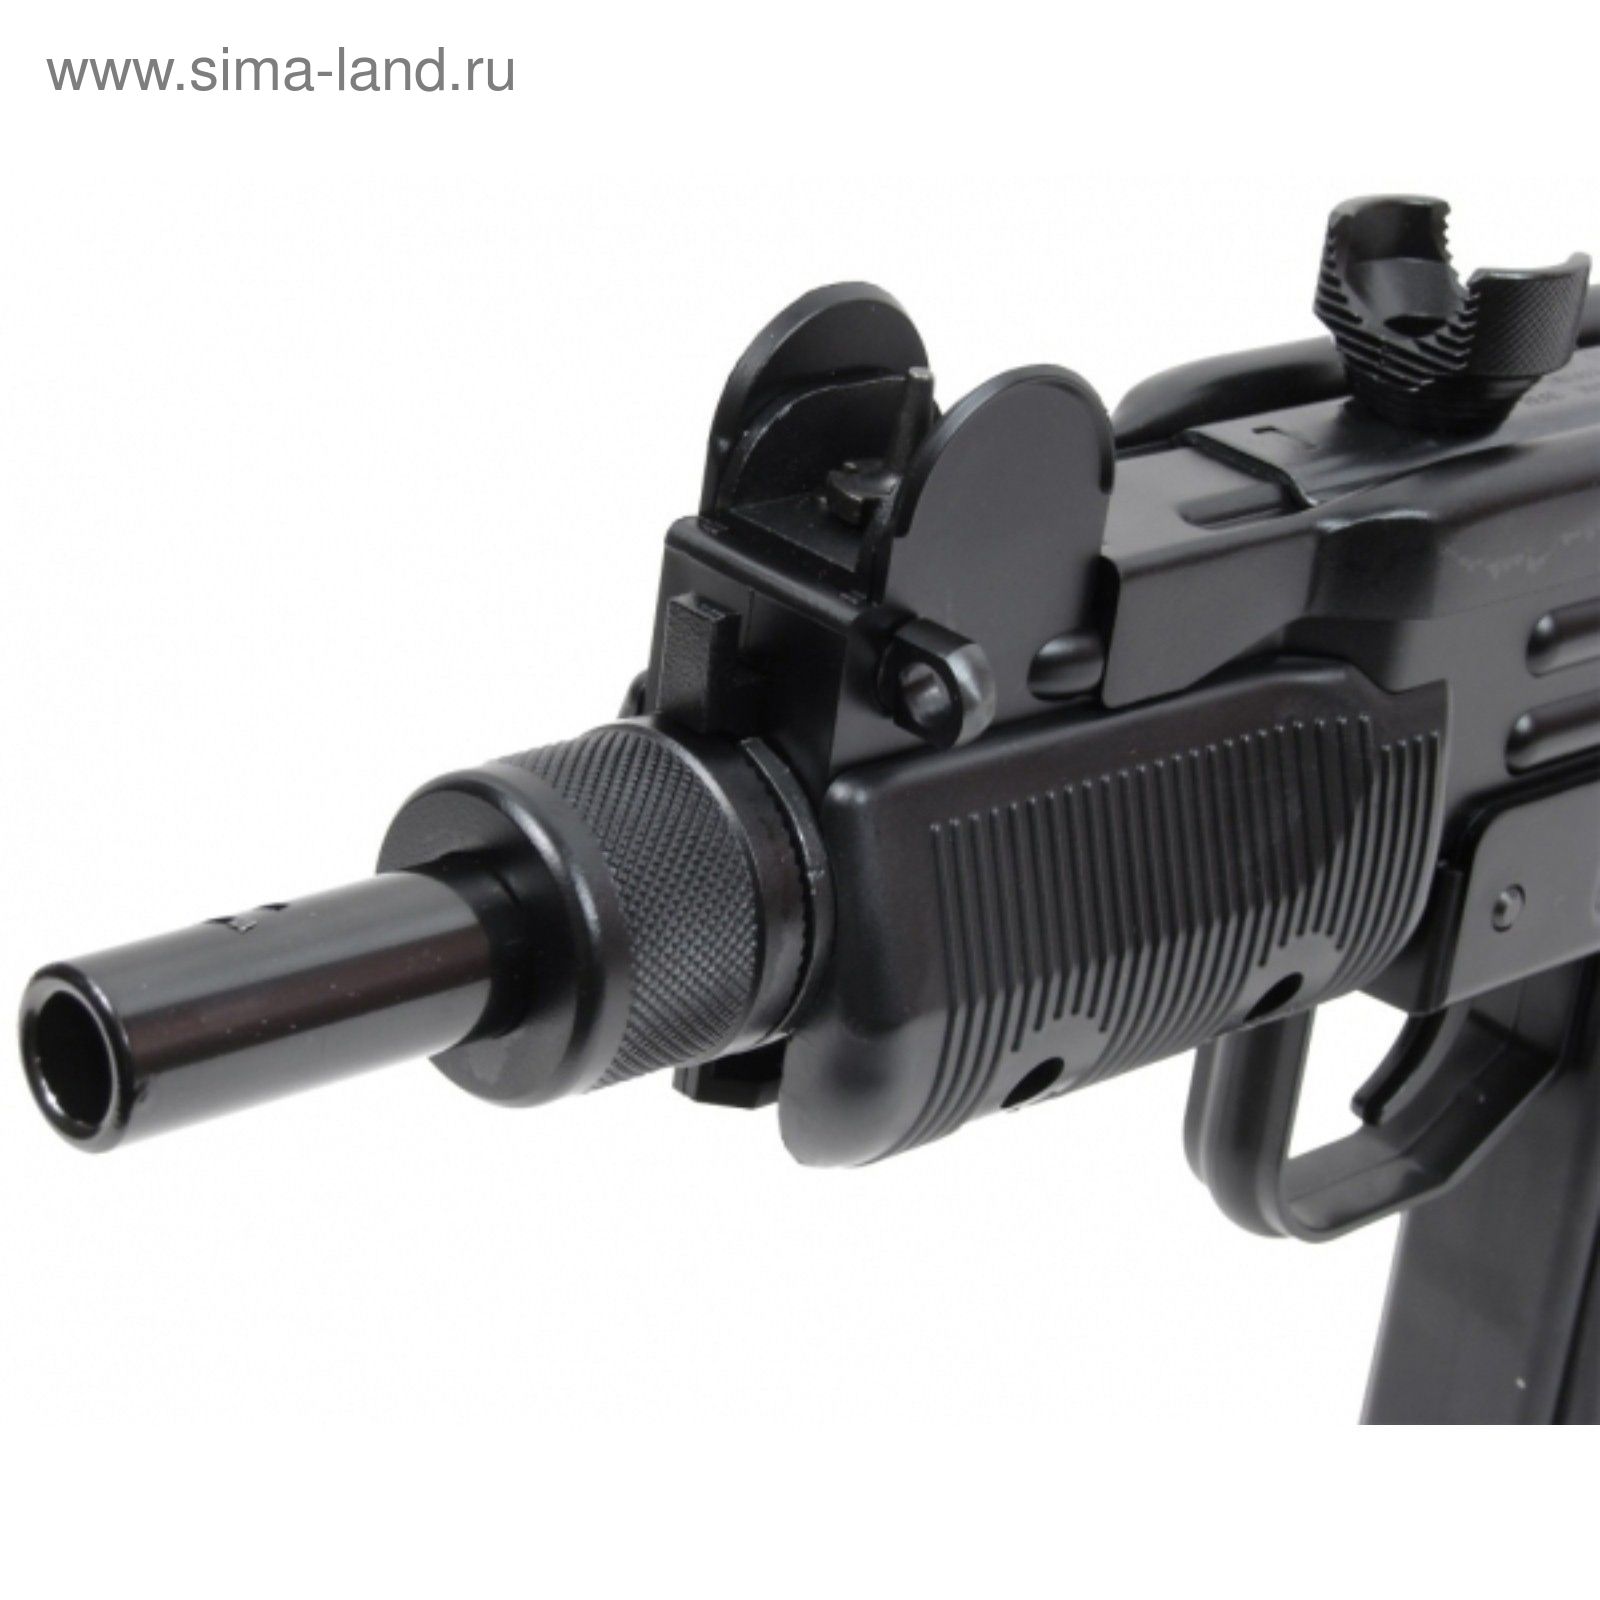 Пистолет пневматический Swiss Arms Protector (MINI UZI), к.4,5 мм, автоматический режим стрельбы, ме